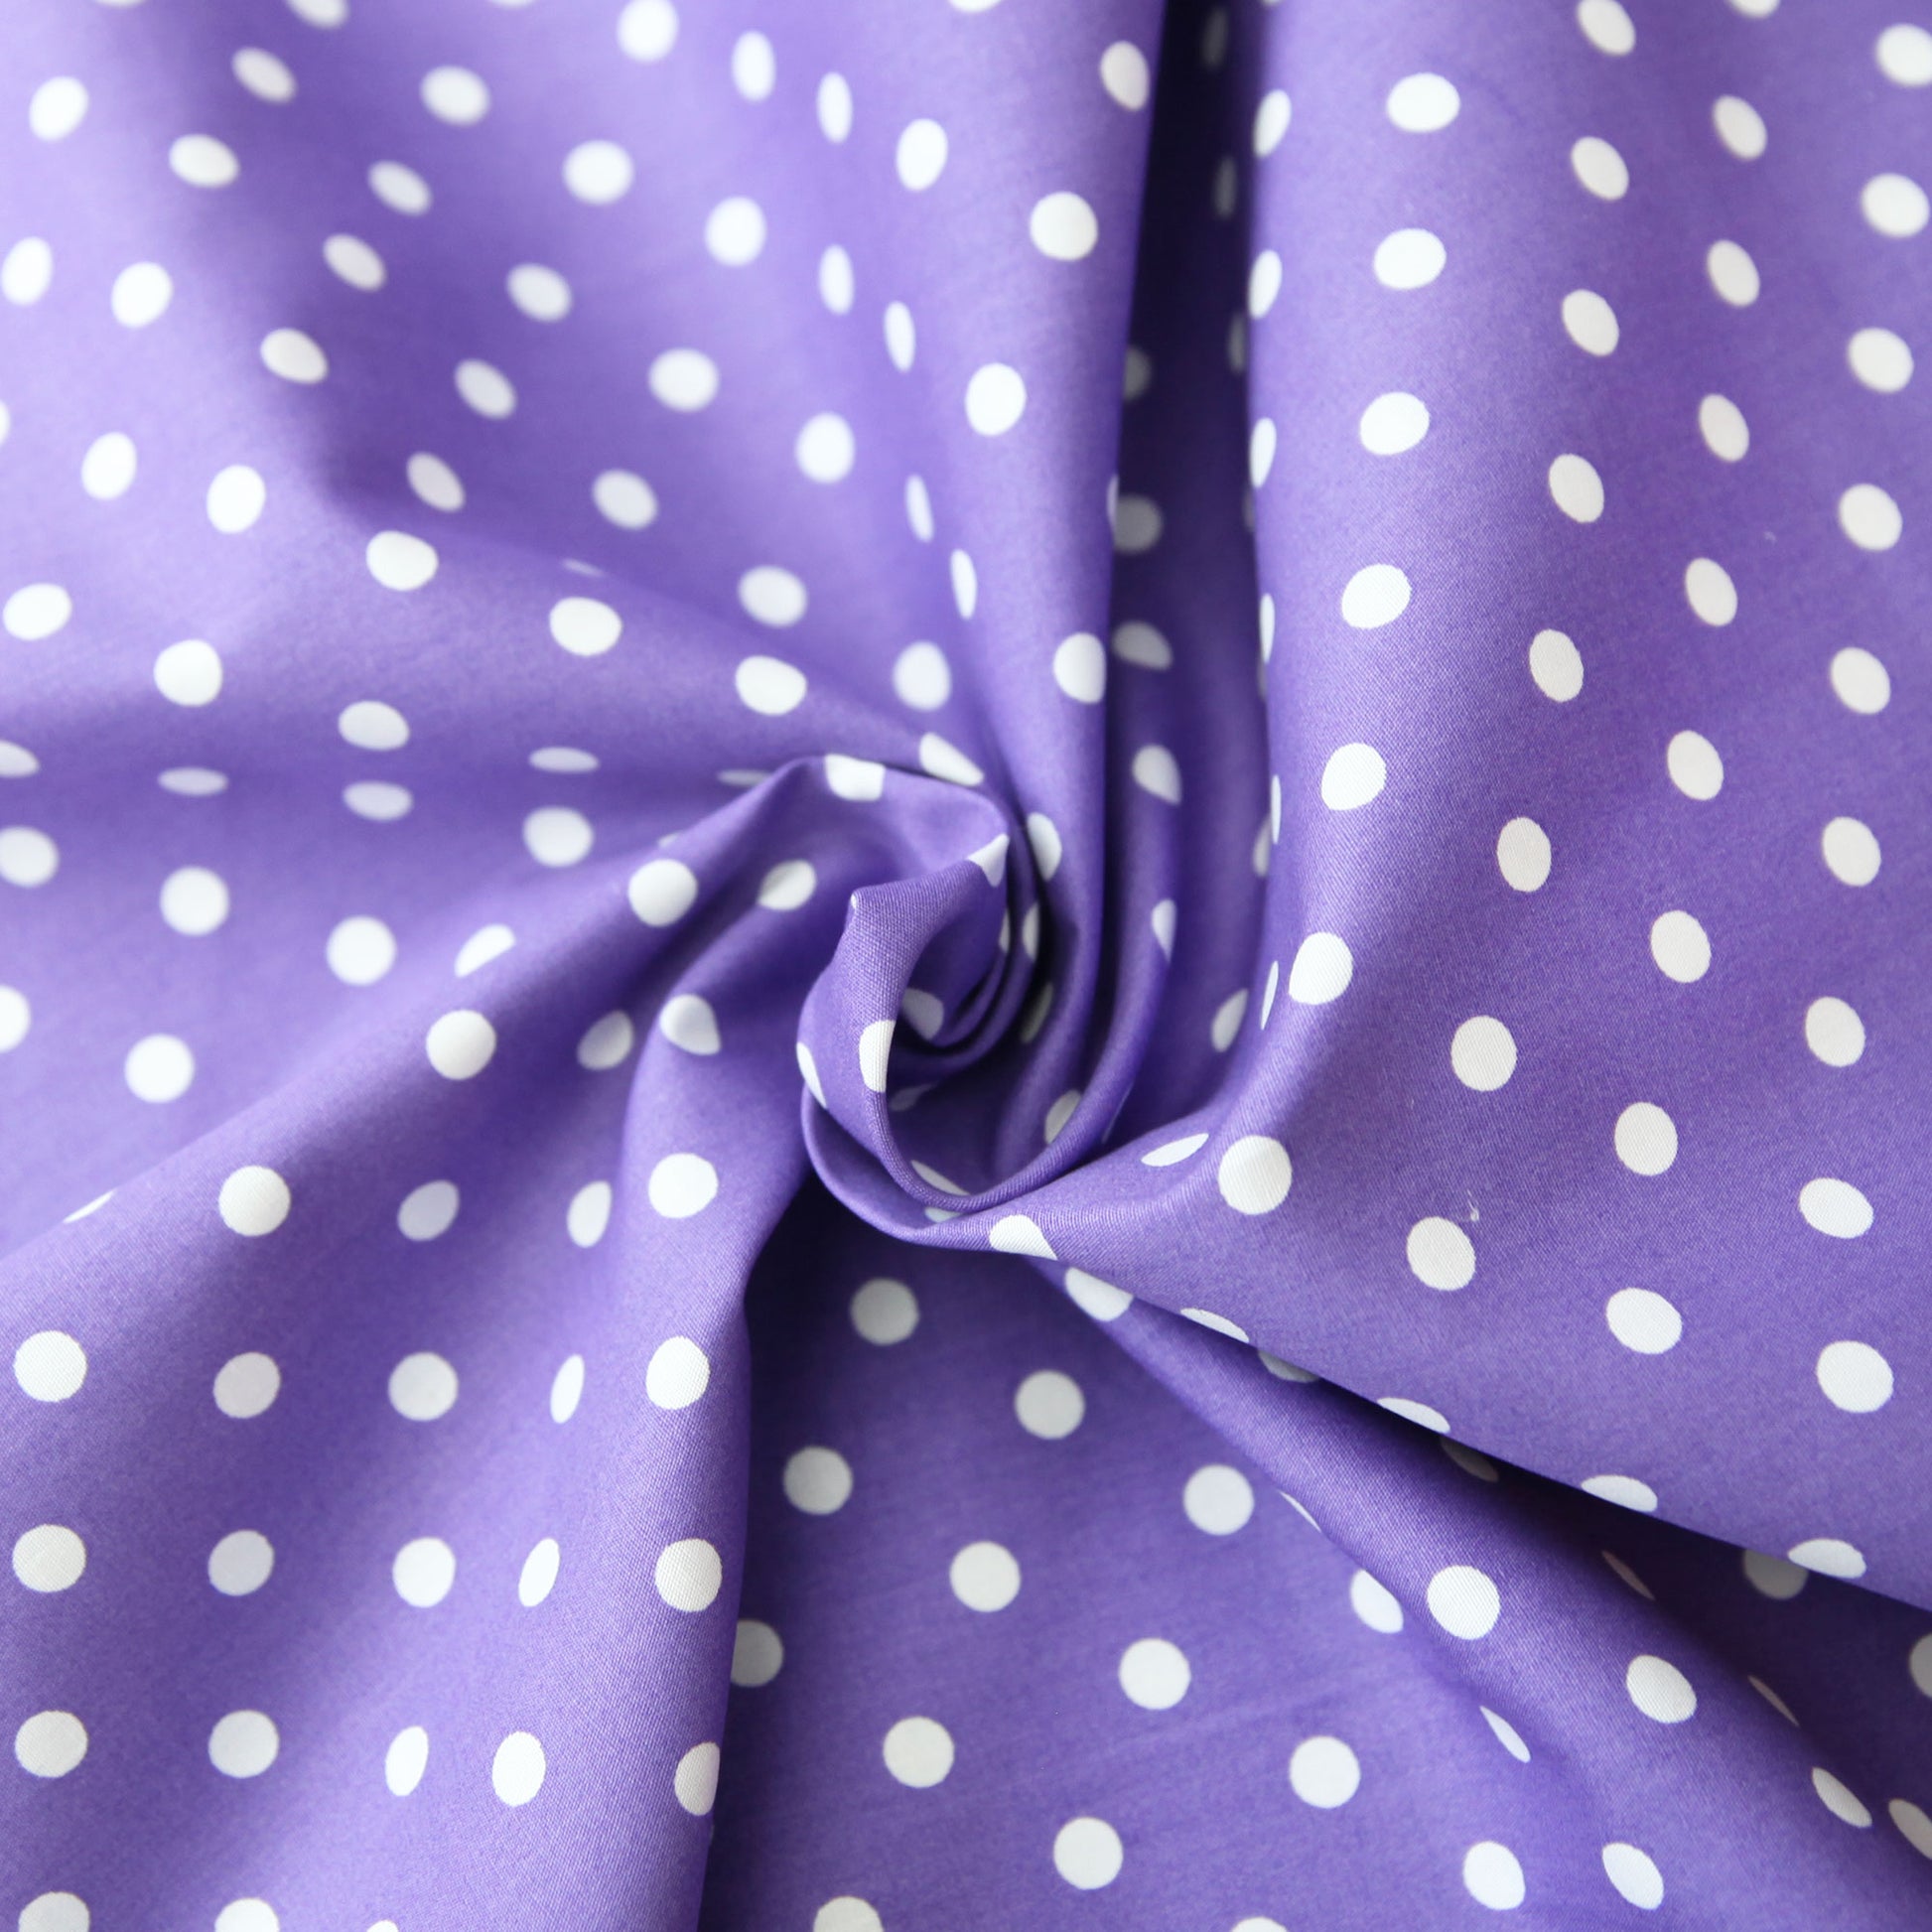 Baumwollstoff mit Punkten / Popeline " 0,8 cm weiße Dots auf violett" - Patchwork 100% Baumwolle lila - Stoffe Kudellino